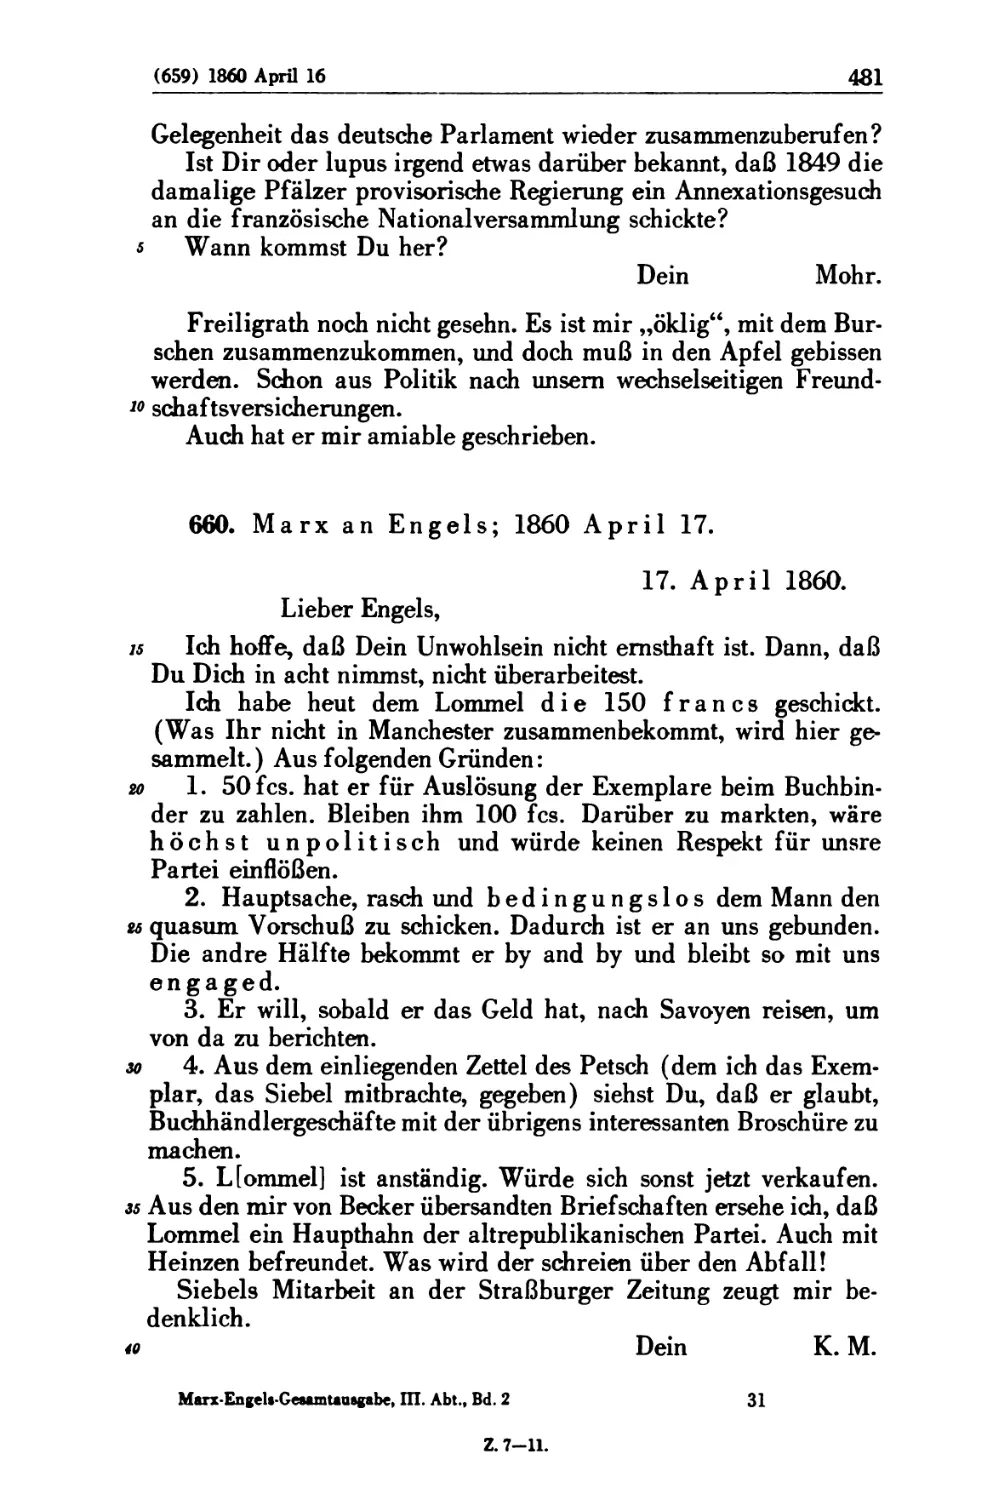 660. Marx an Engels; 1860 April 17